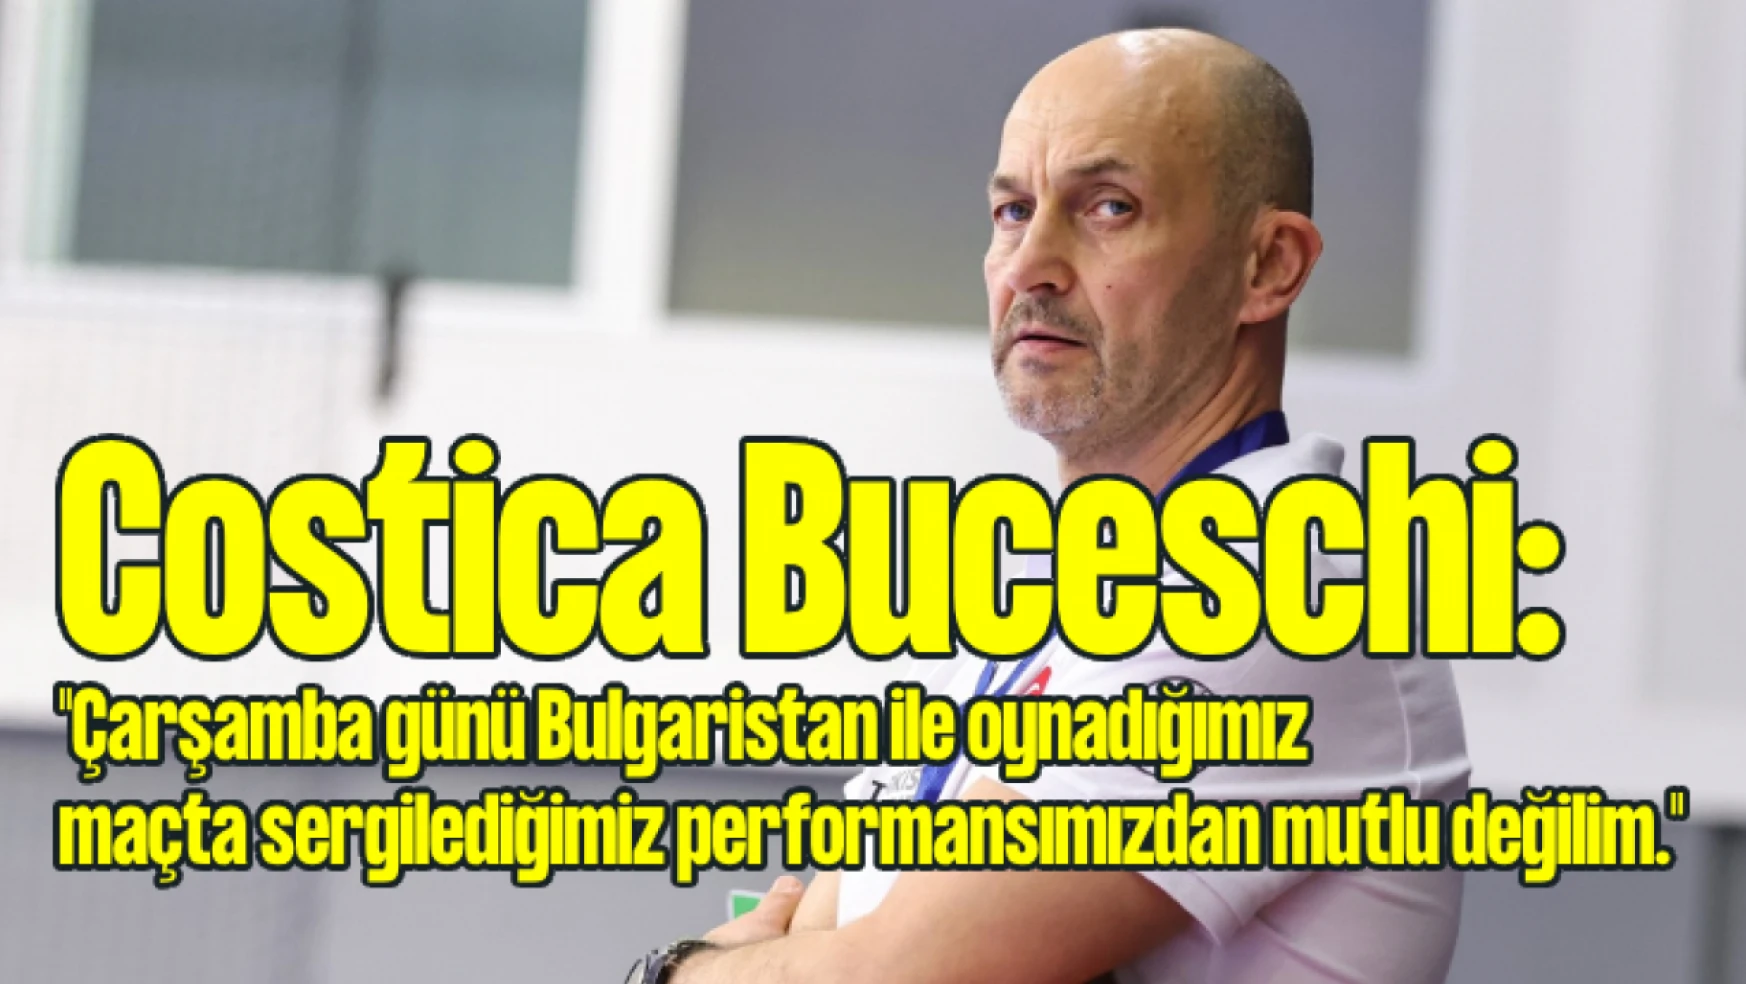 Costica Buceschi: 'Performansımızdan mutlu değilim'